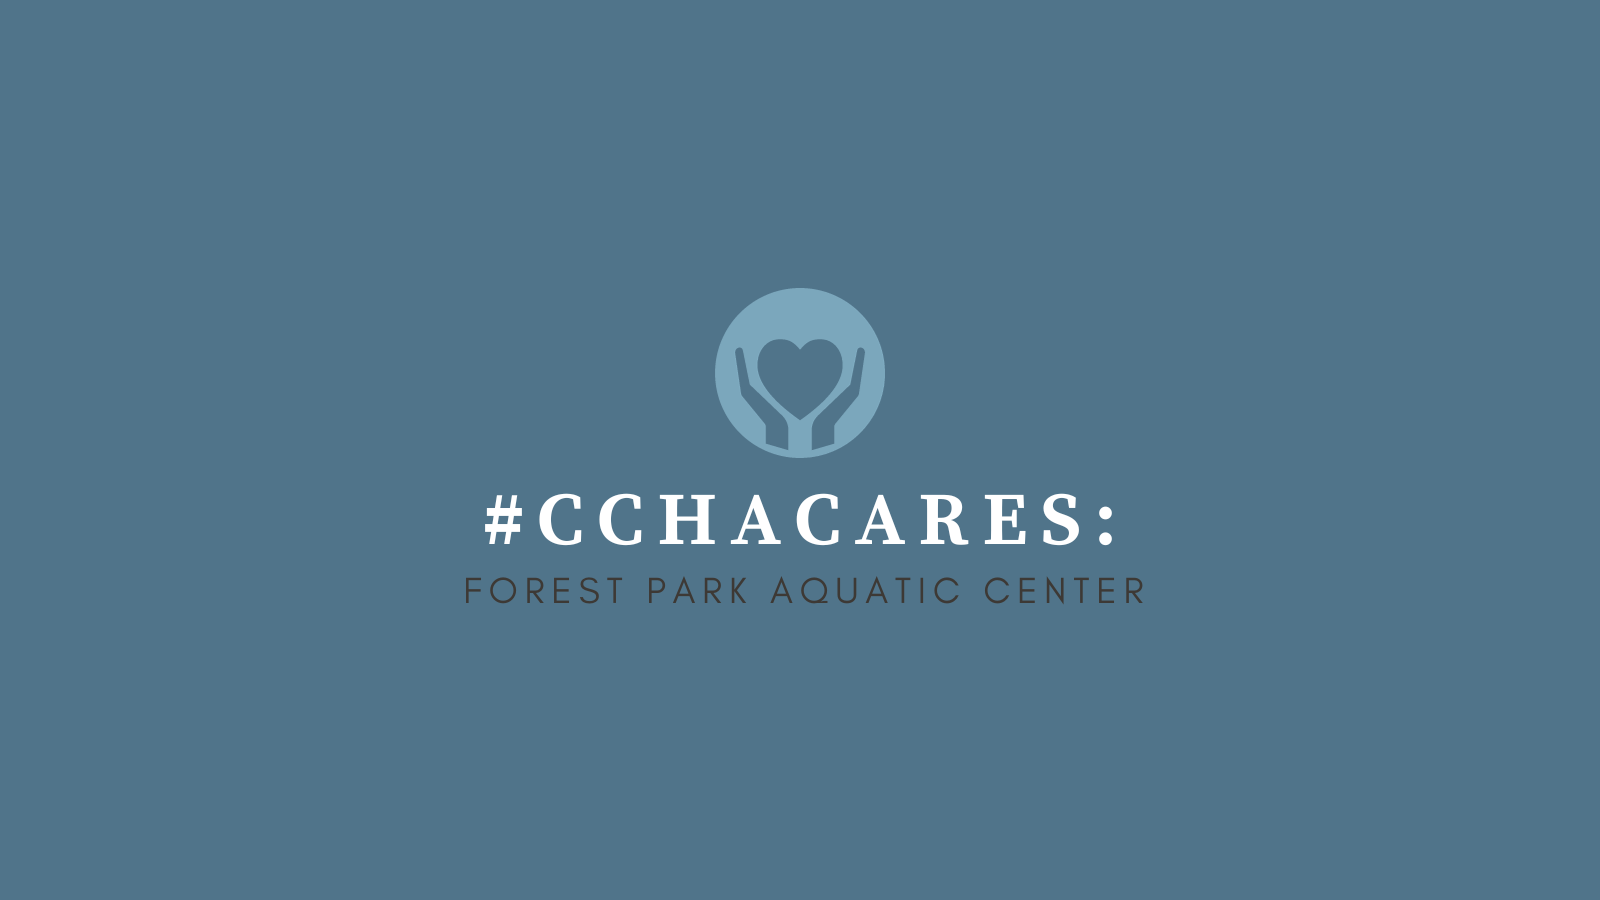 CCHA Cares Forest Park Aquatic Center